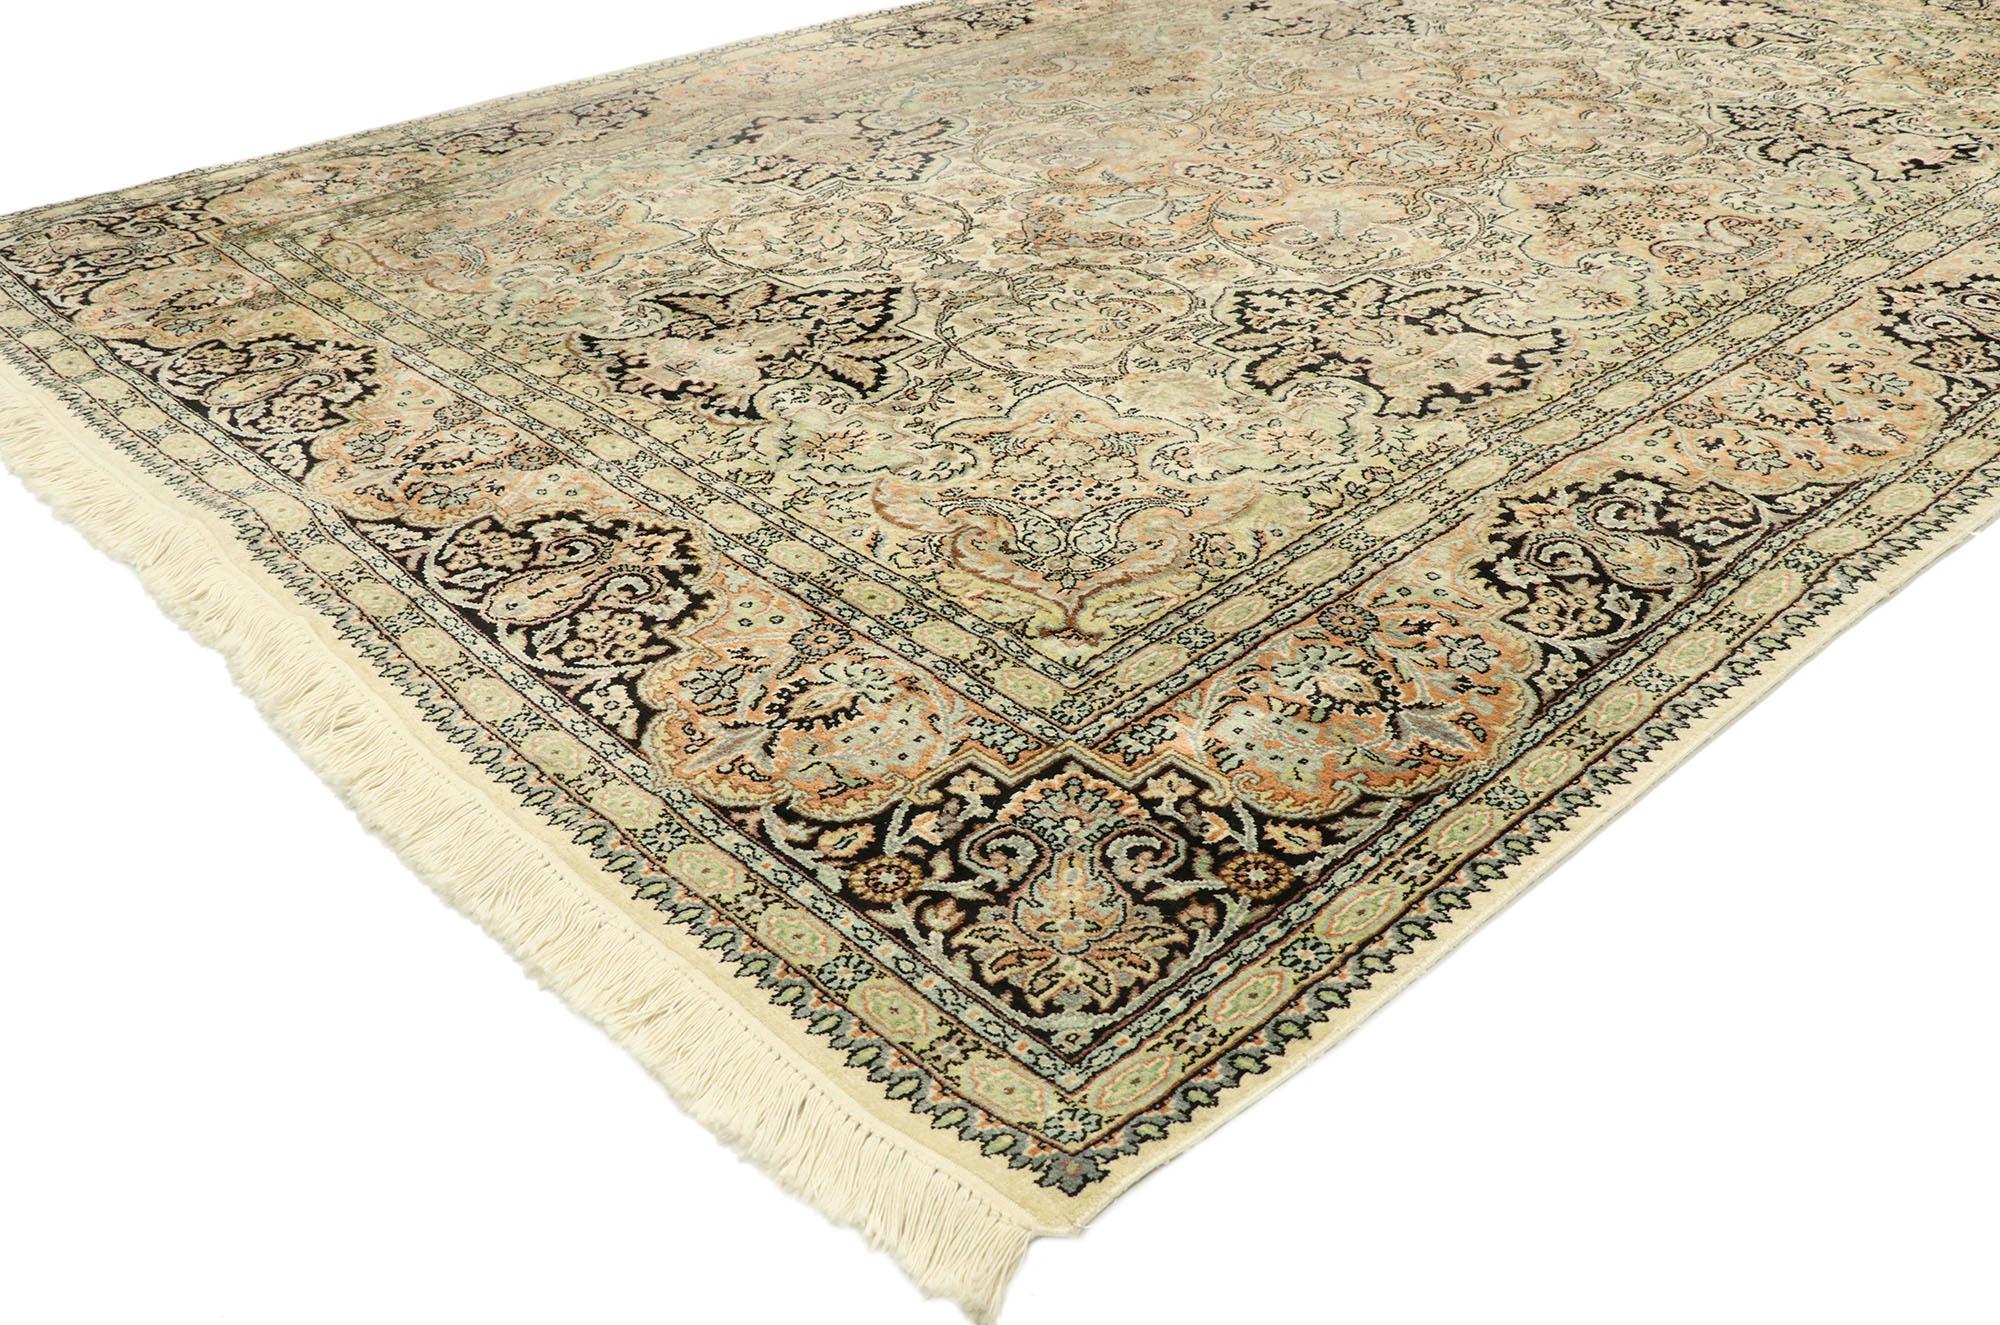 77533 Indischer Kaschmir-Teppich im Jugendstil und Rokoko-Stil. Dieser handgeknüpfte indische Kaschmir-Teppich aus Wolle verkörpert mit seinen kunstvollen Details und seiner ausgewogenen Symmetrie in Kombination mit einer verträumten Farbpalette auf